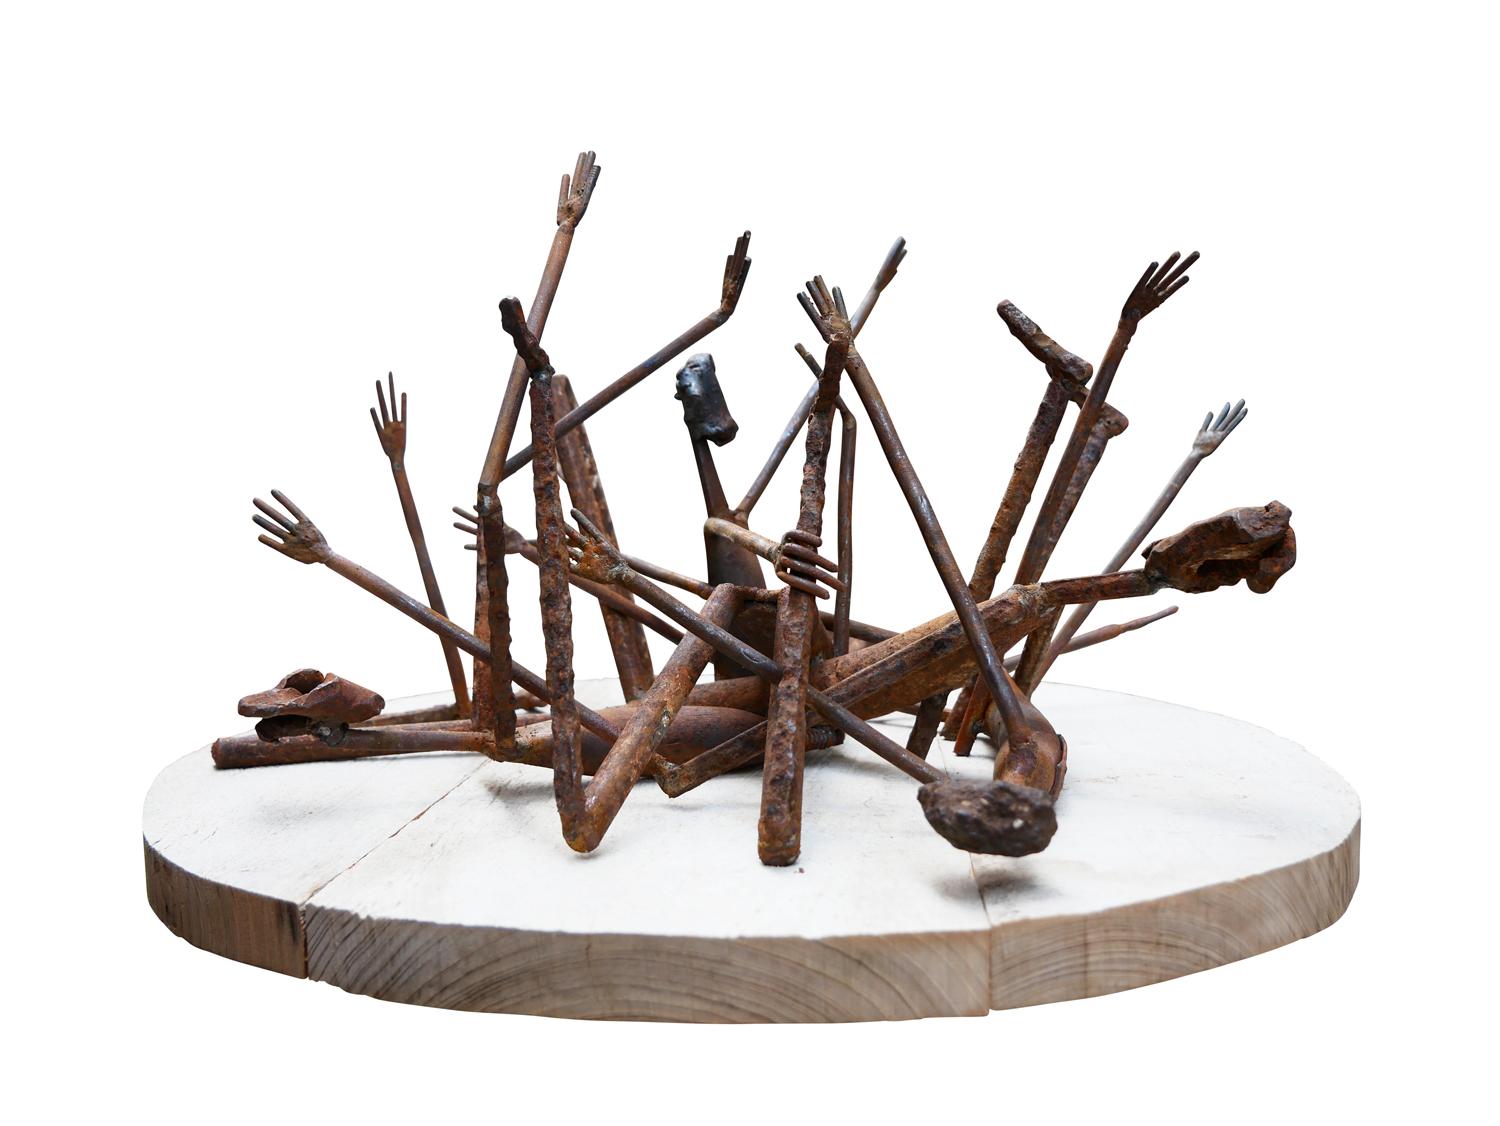 „Twister“ Modernistische abstrakte figurative Skulptur aus Stahl und Holz – Sculpture von Jack Farrell